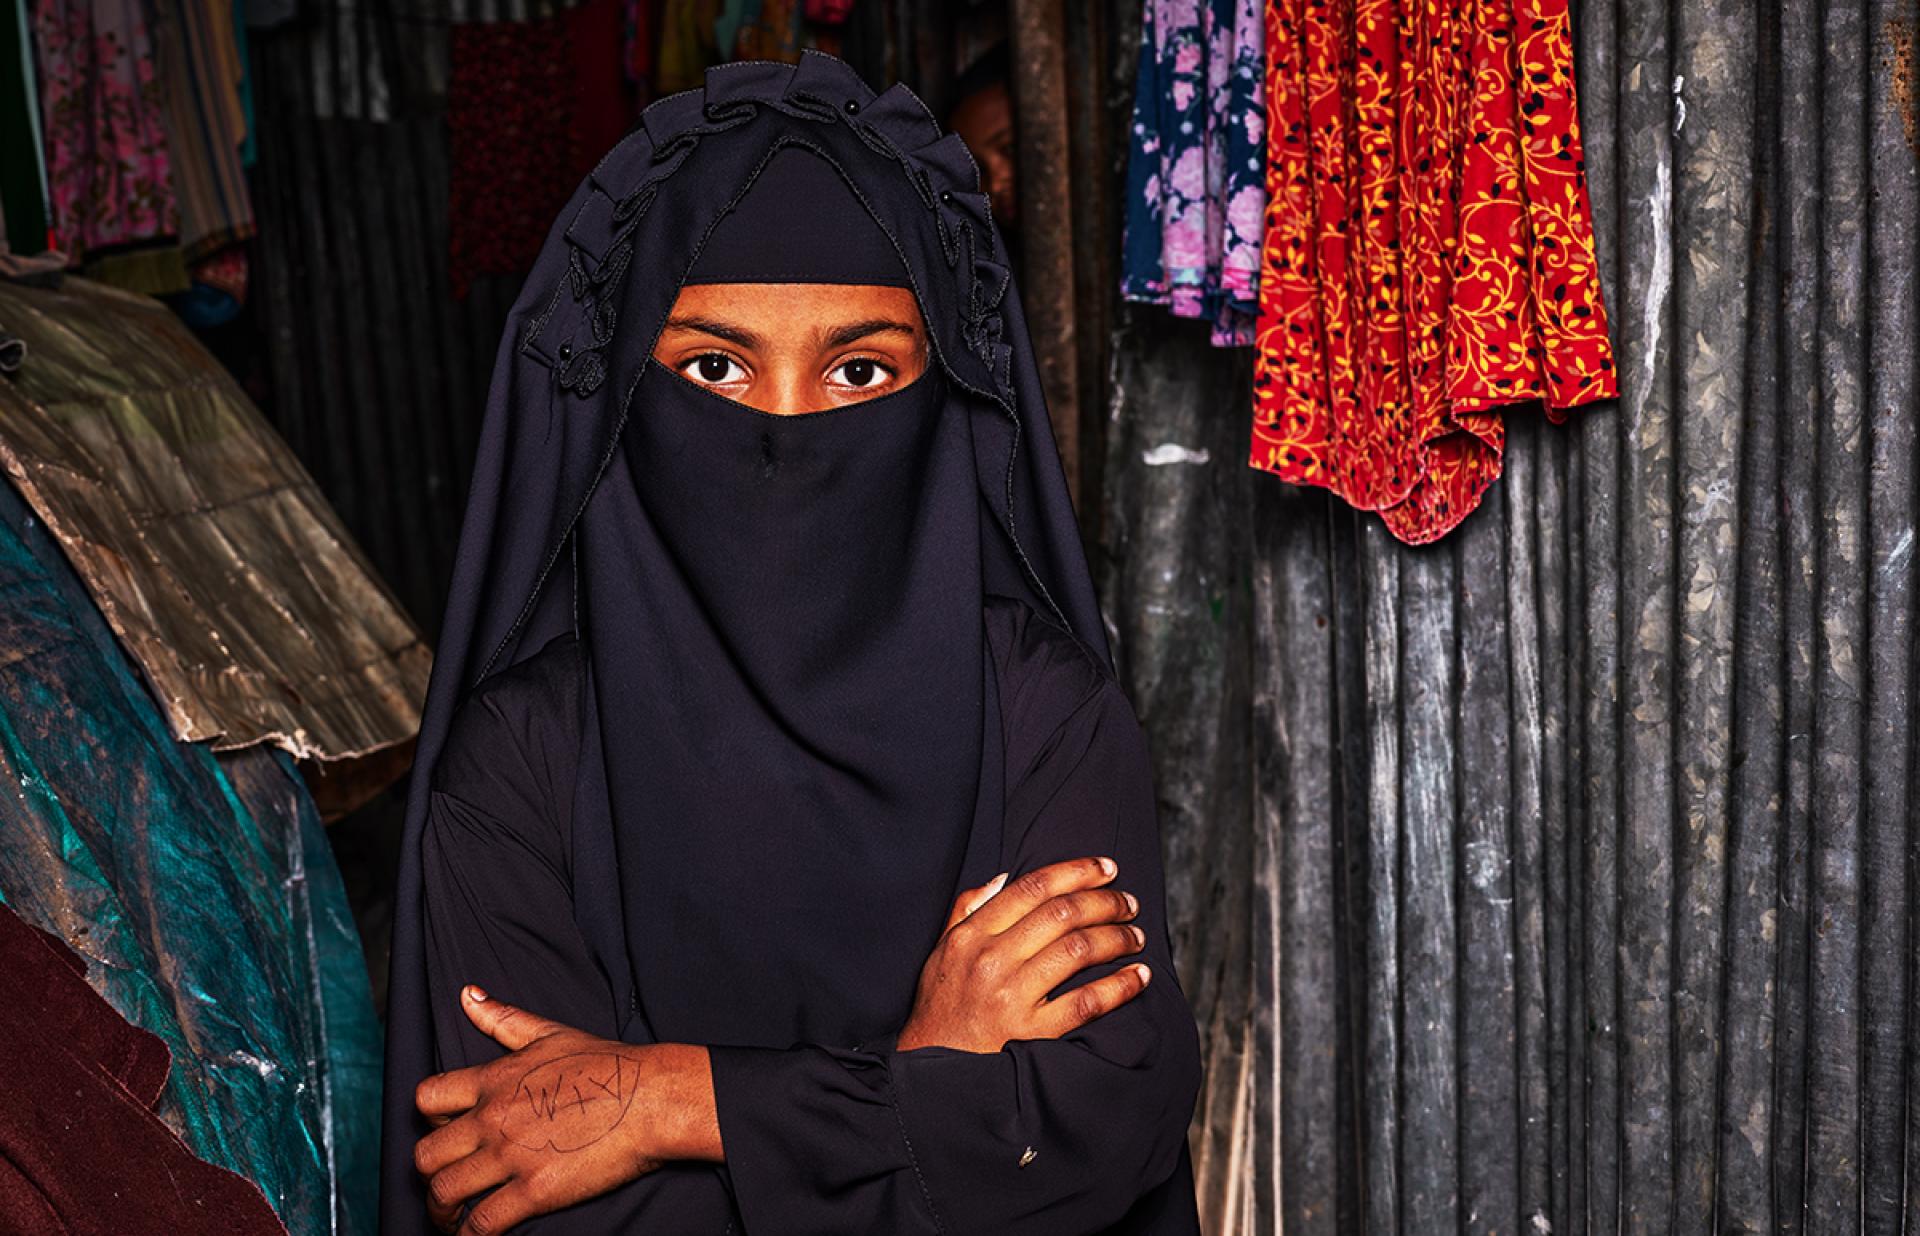 London Photography Awards Winner - Moslem Girl